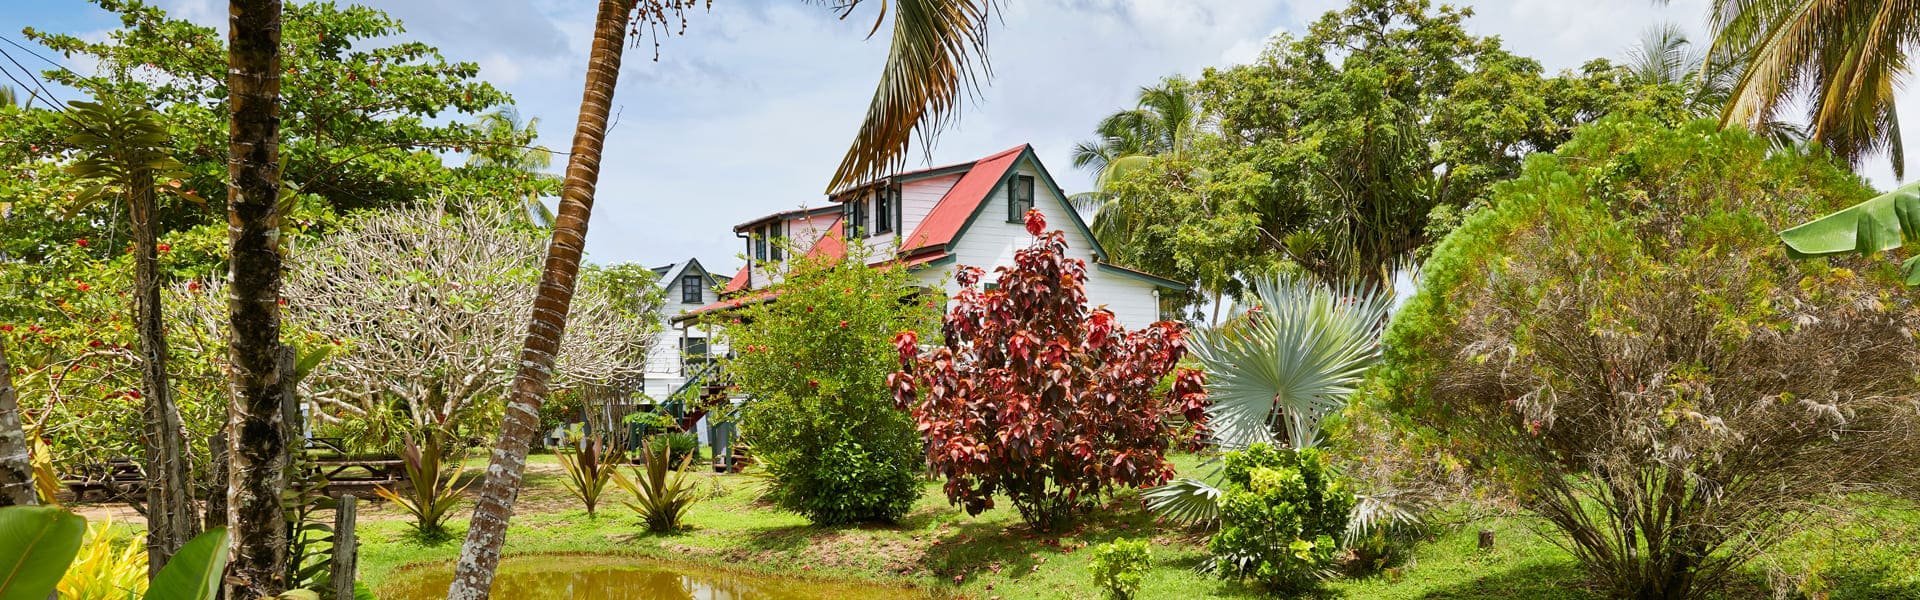 Frederiksdorp, Commewijnegebied, Suriname